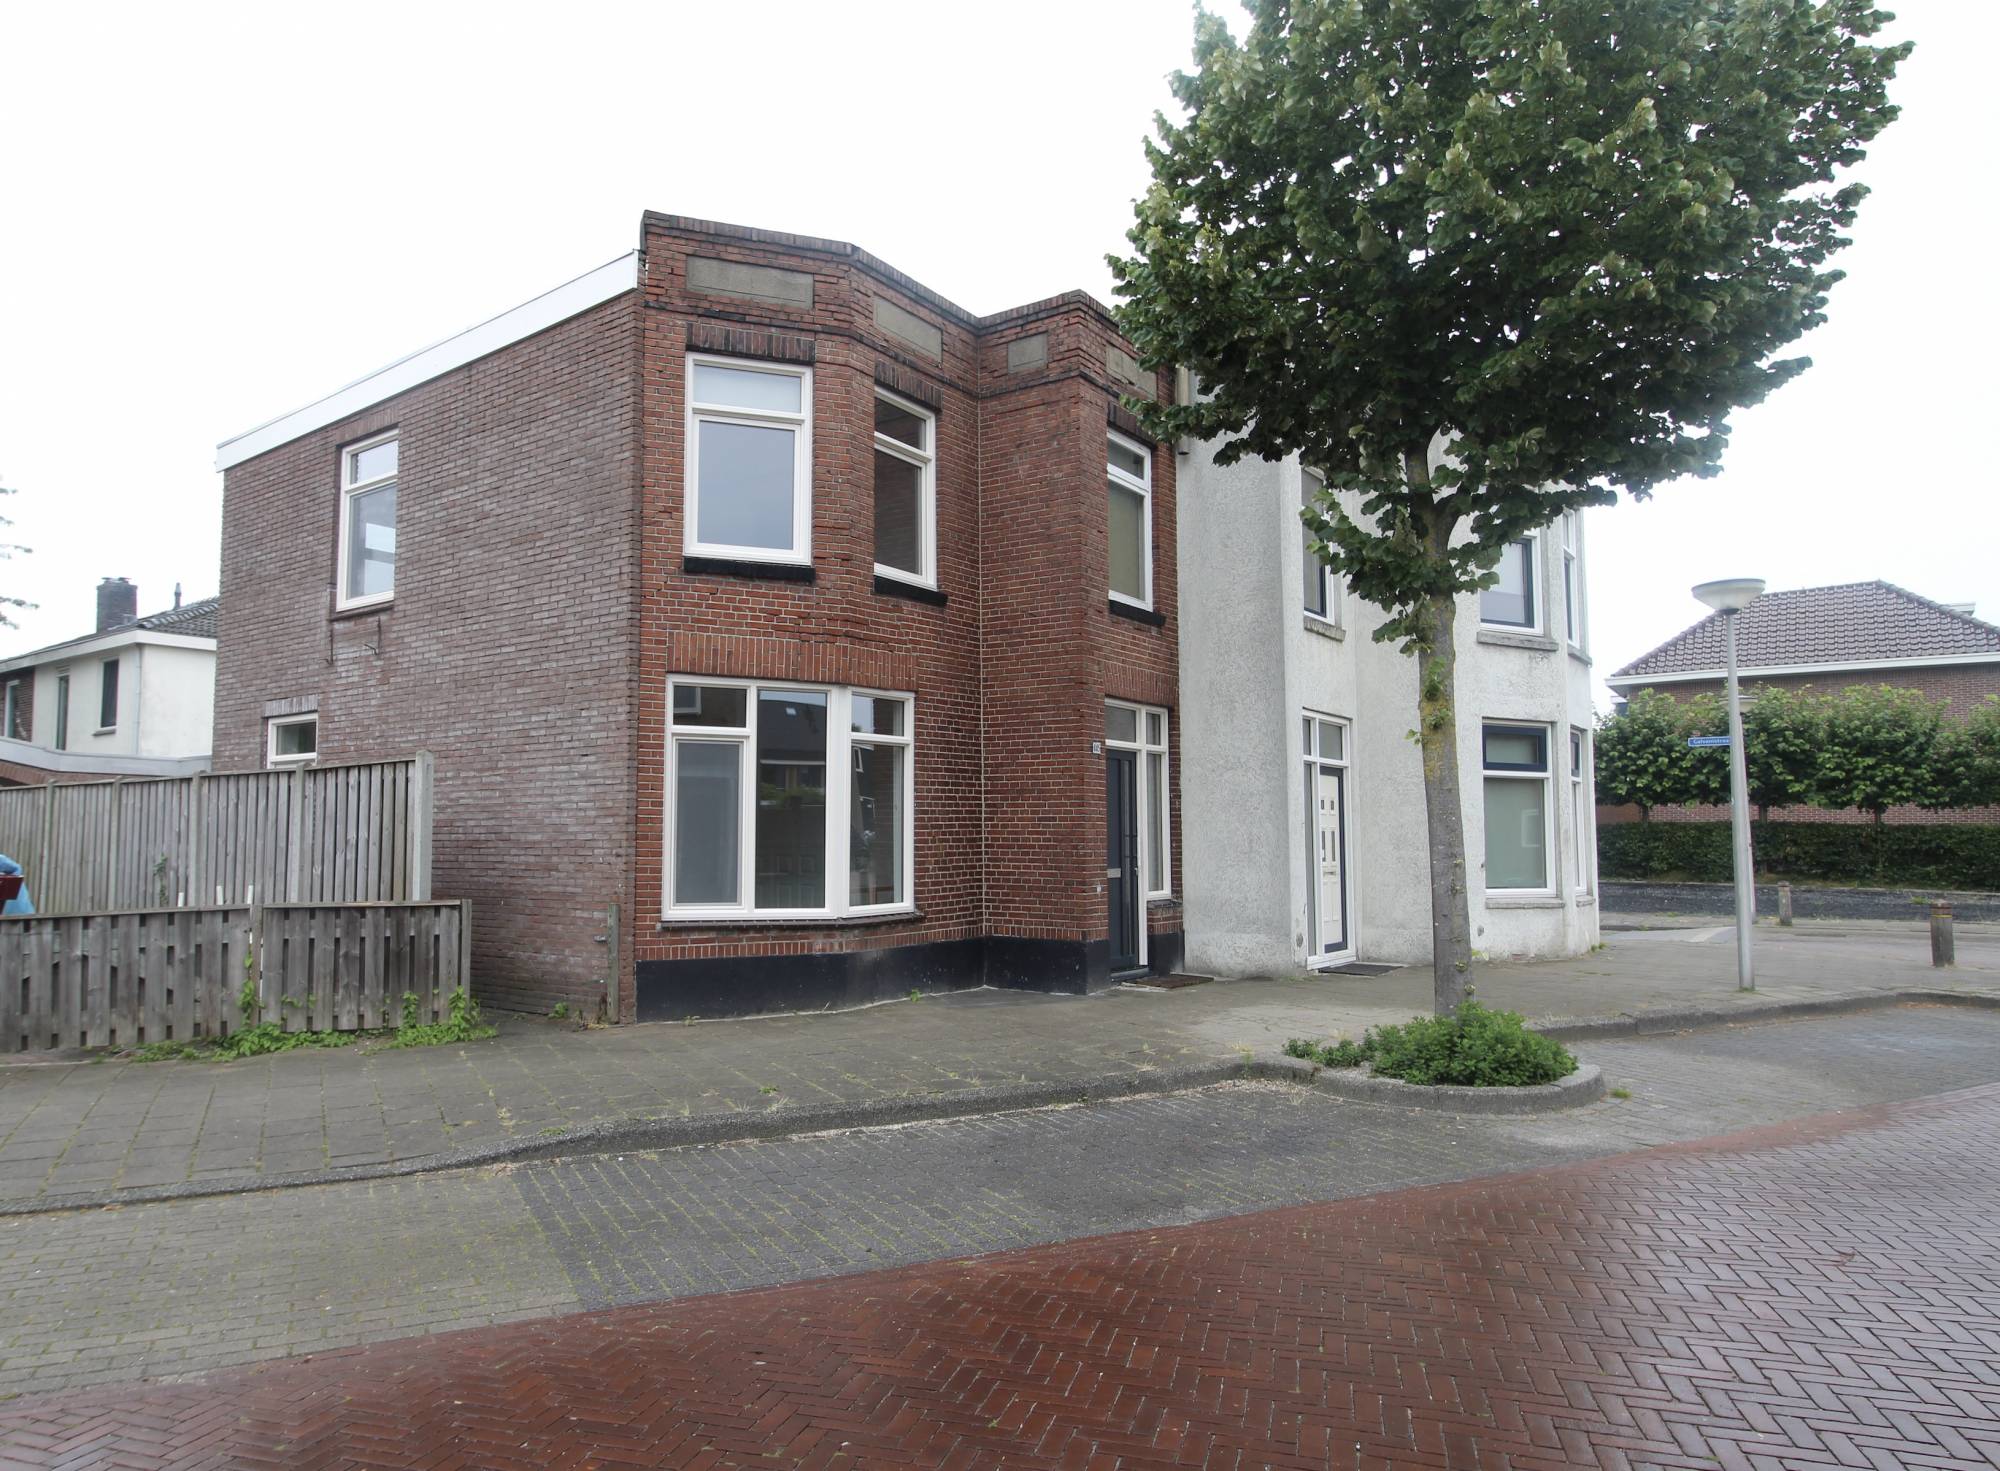 Bekijk foto 1/17 van house in Enschede